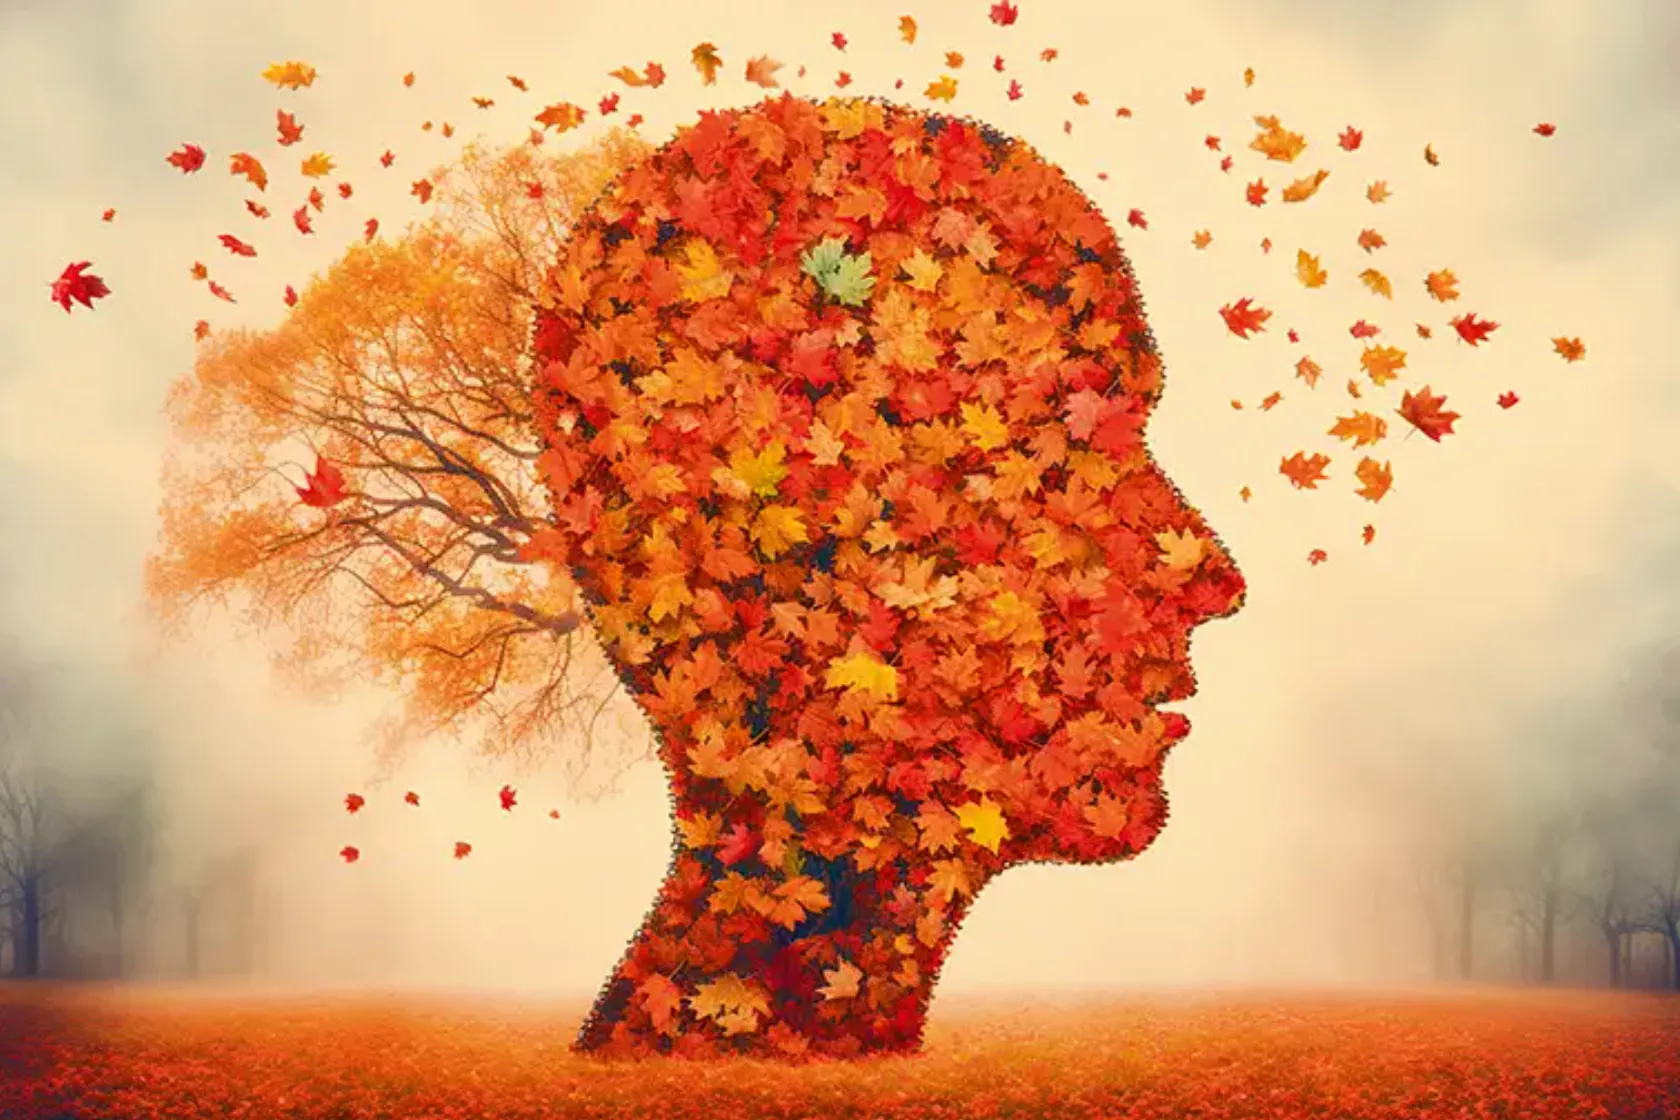 KI-Bild Silhouette eines Kopfes voller Herbstlaub, aus dem Blätter herauswehen - sinnbildlich für Demenz.